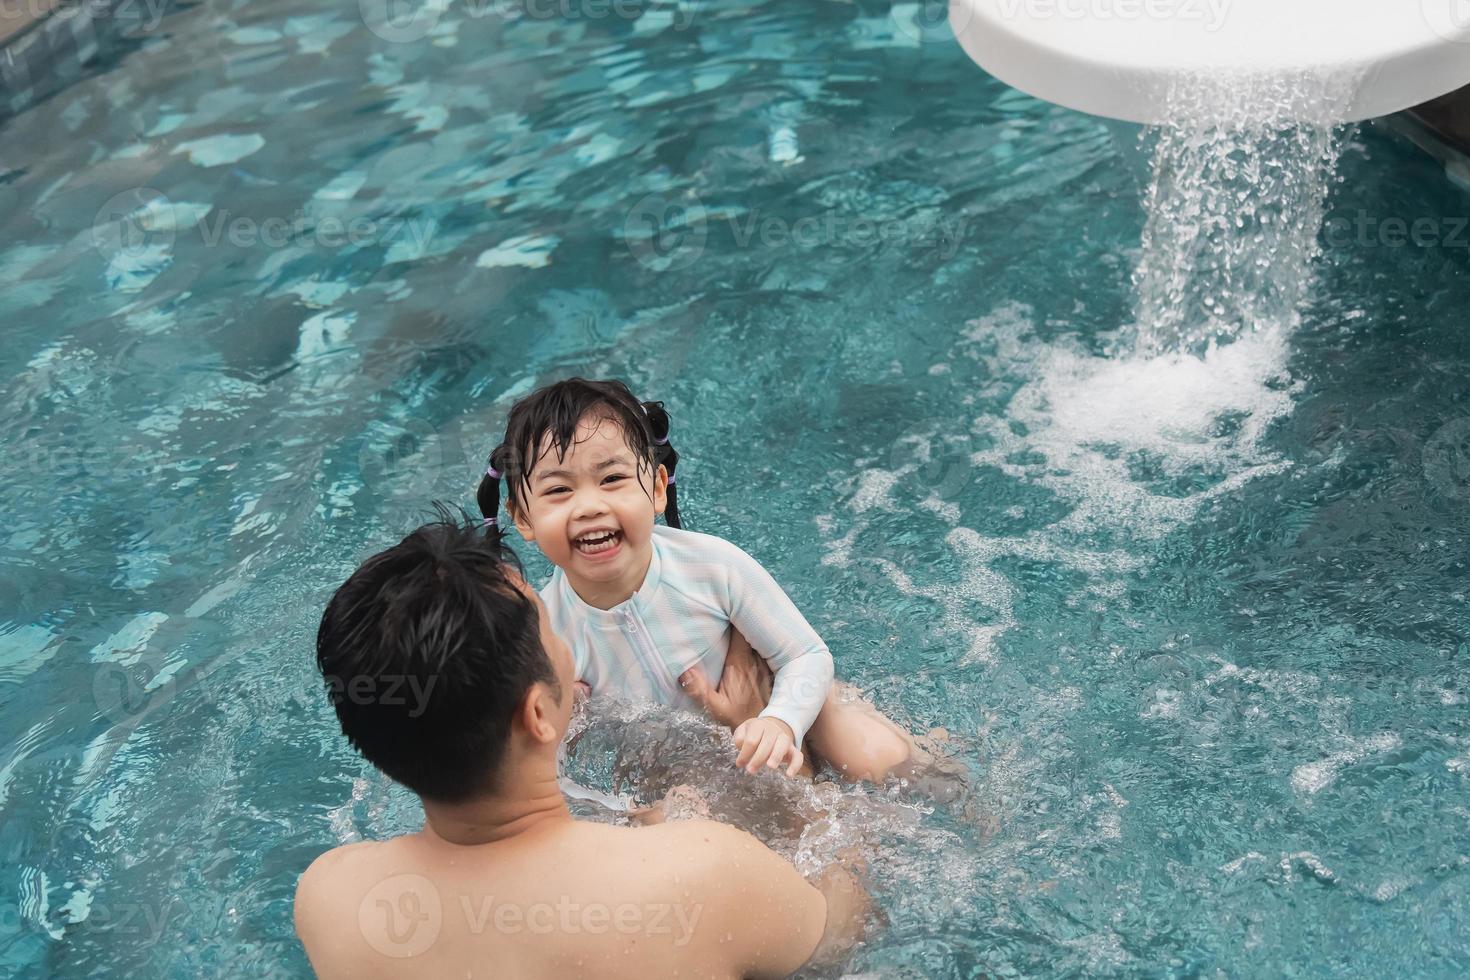 padre e hija asiáticos nadando jugando al tobogán en la piscina del resort, sonriendo y riendo. divirtiéndose en la piscina del hotel resort, concepto familiar feliz. foto